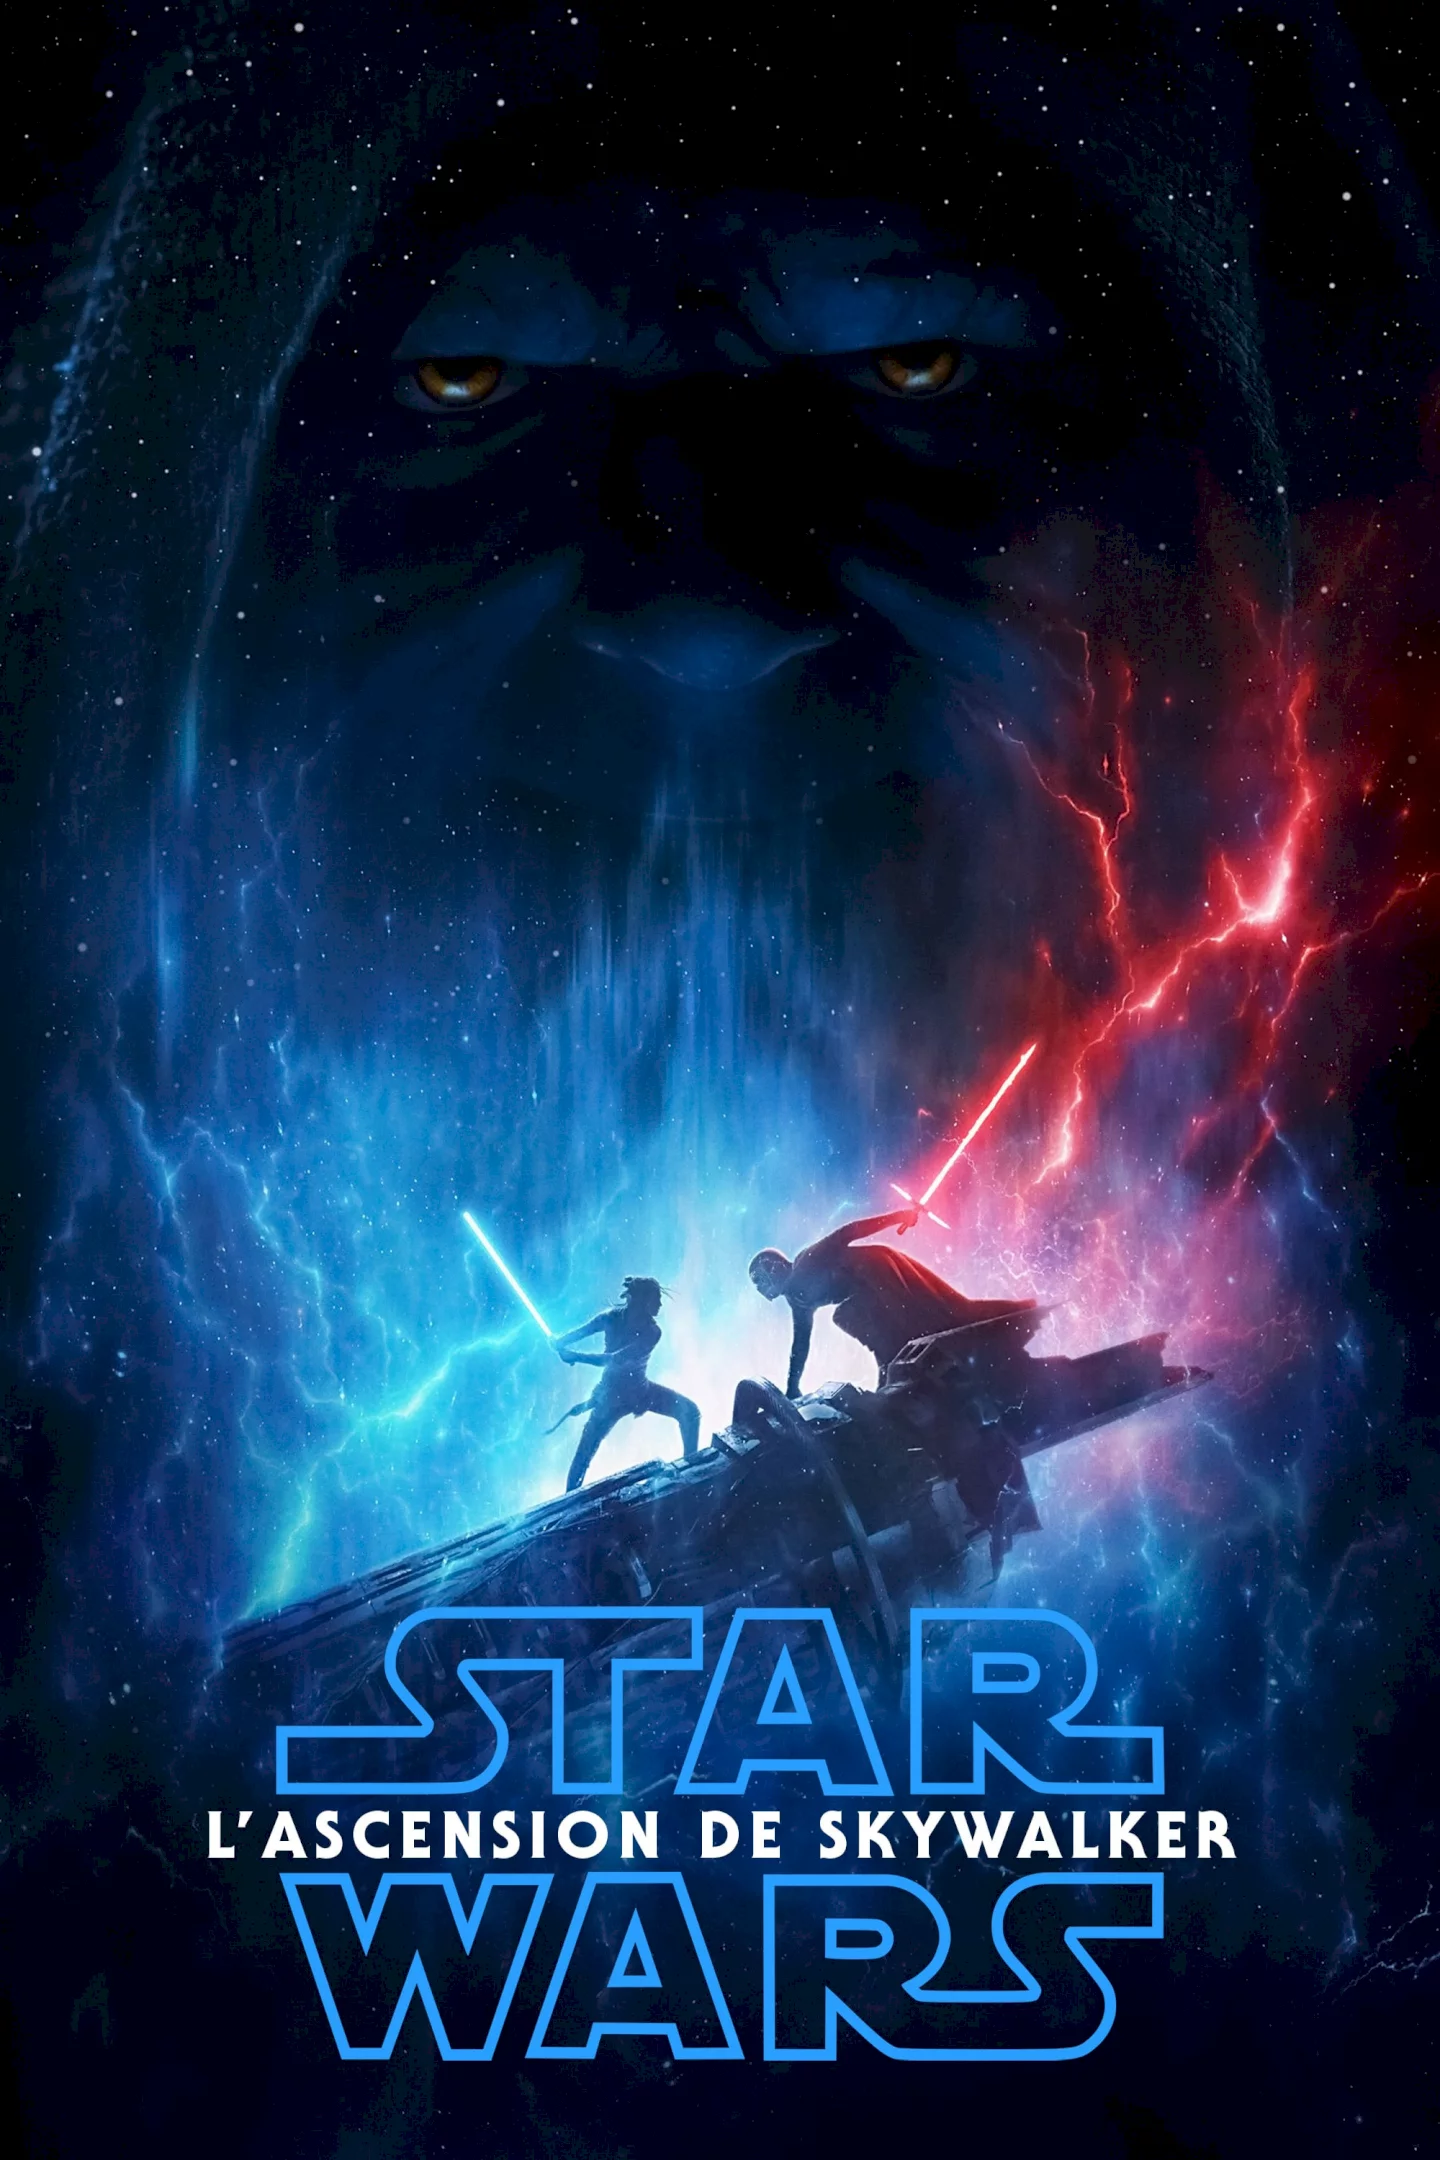 Photo du film : Star Wars : Episode IX - L'Ascension de Skywalker